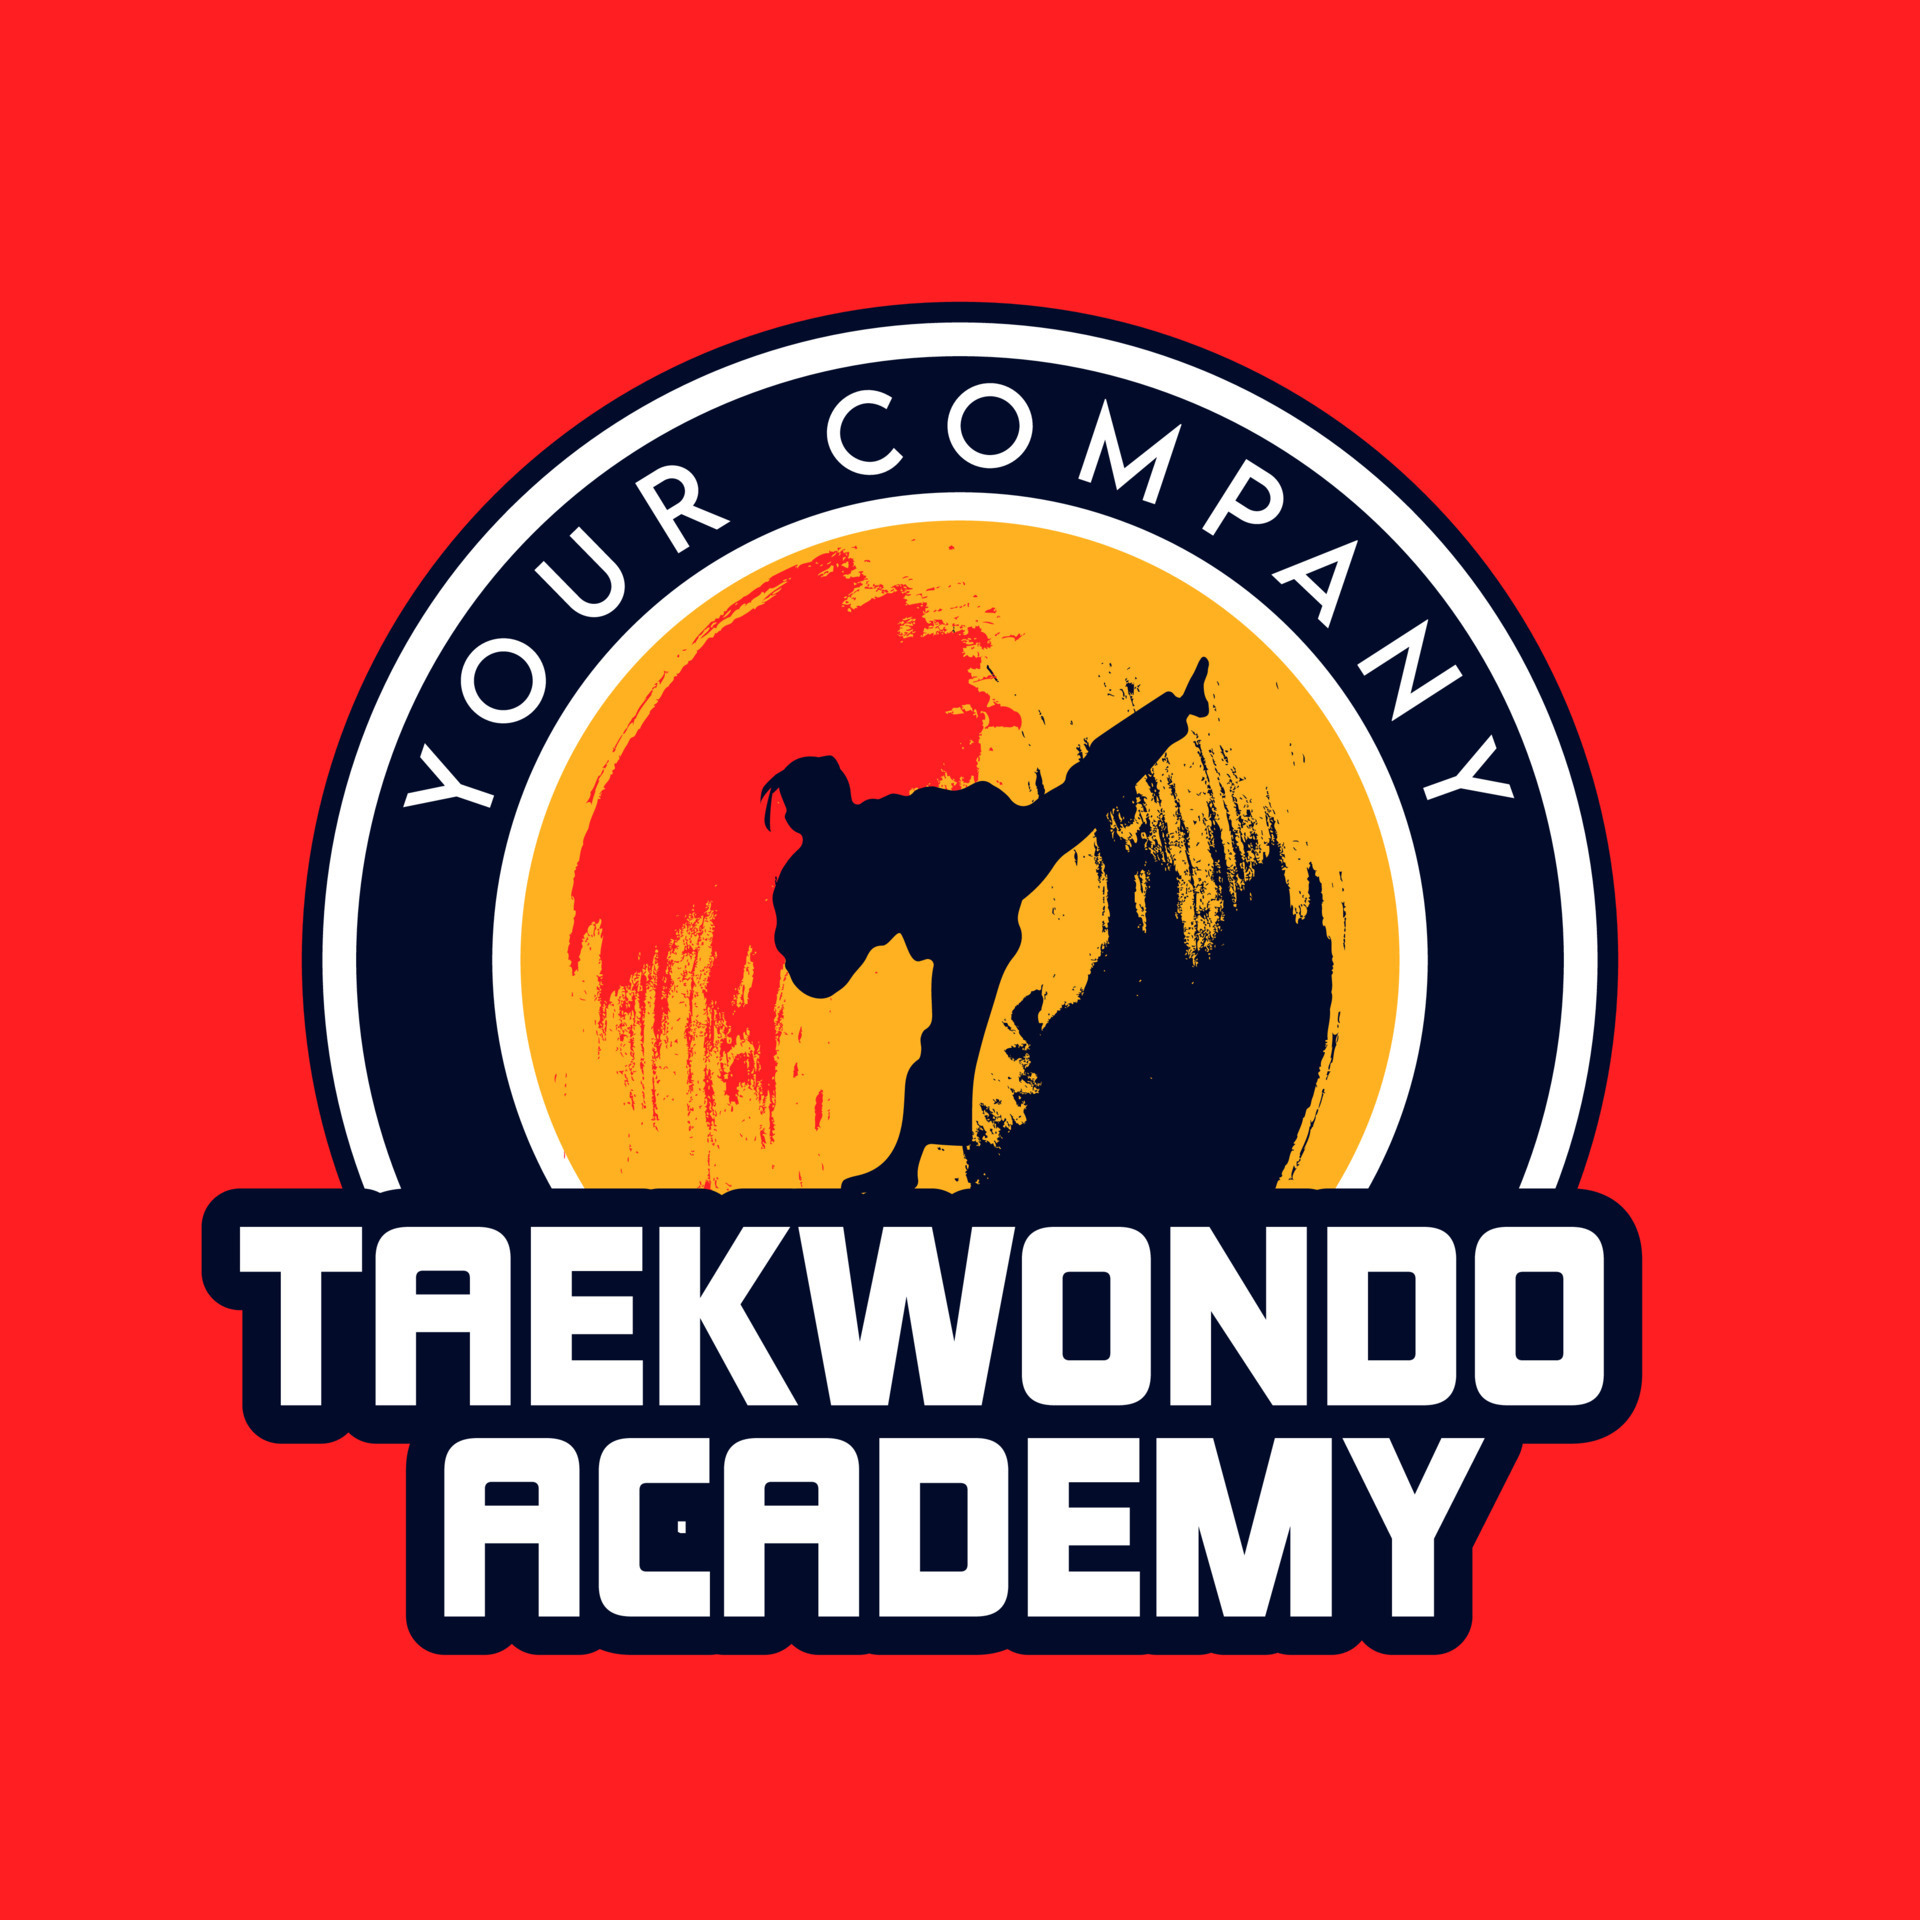 Taekwondo Academy Logo Design Template For Emblem Logo And More Vector 